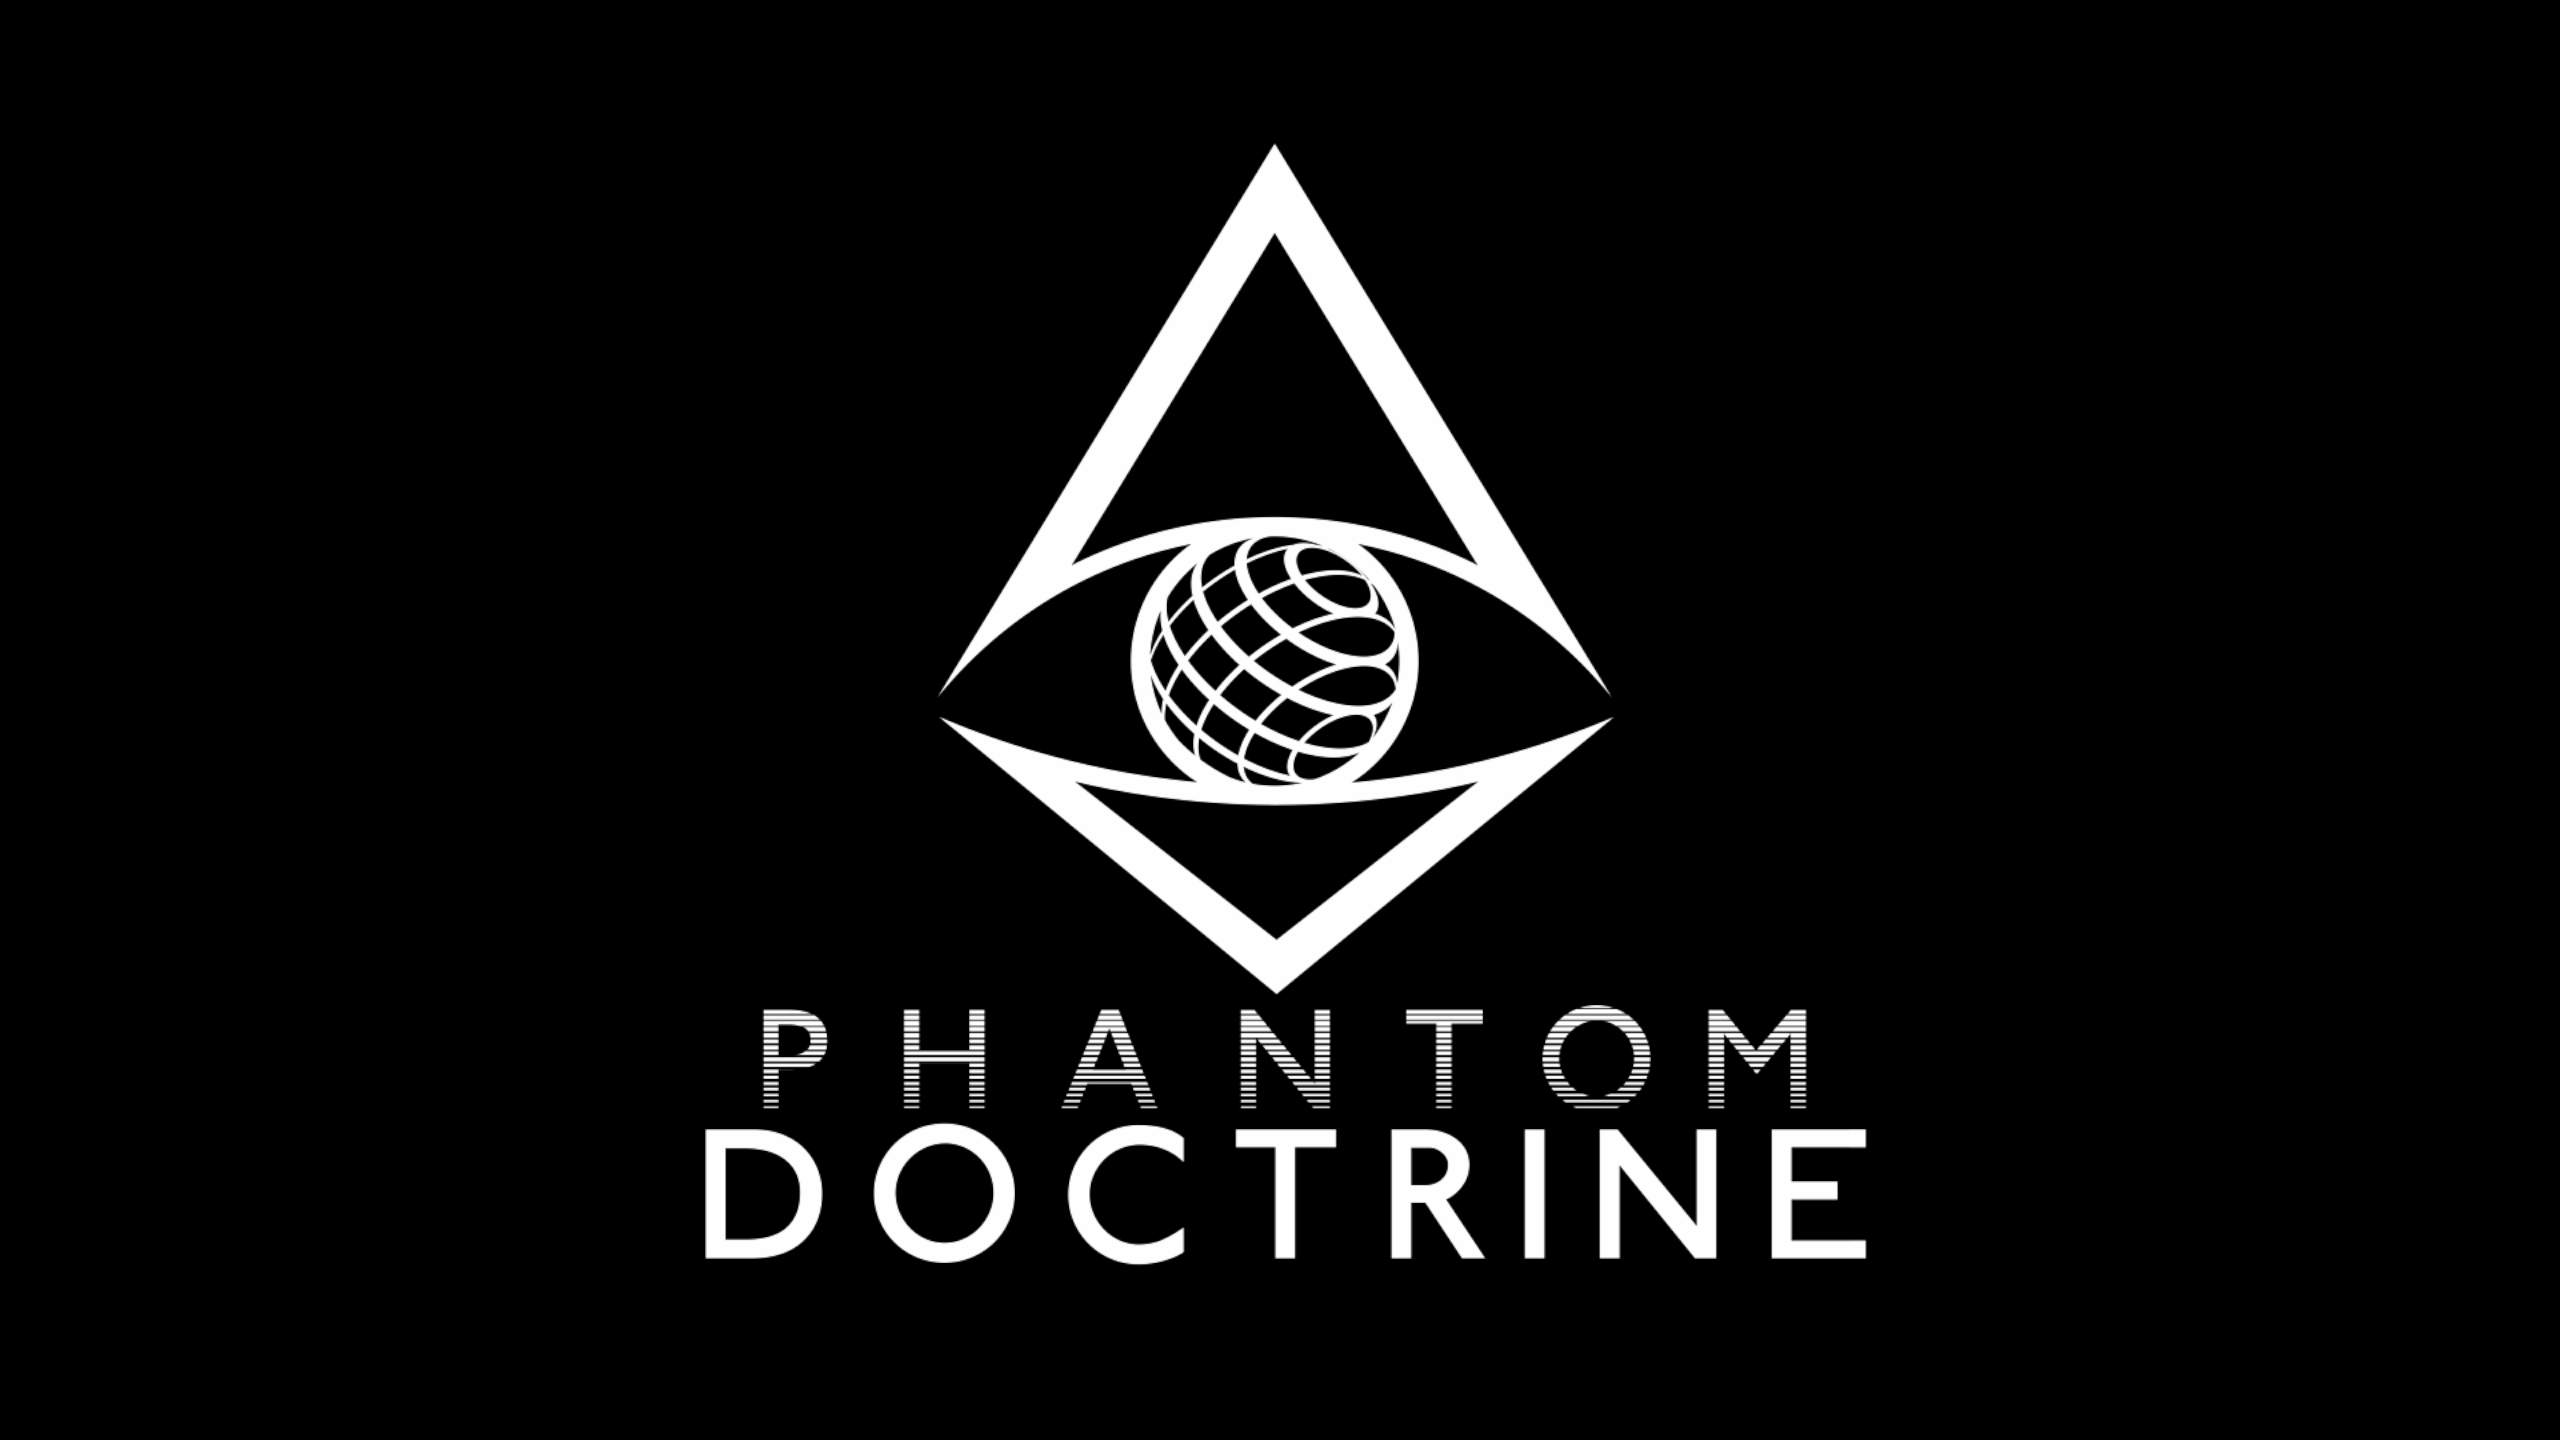 Phantom doctrine